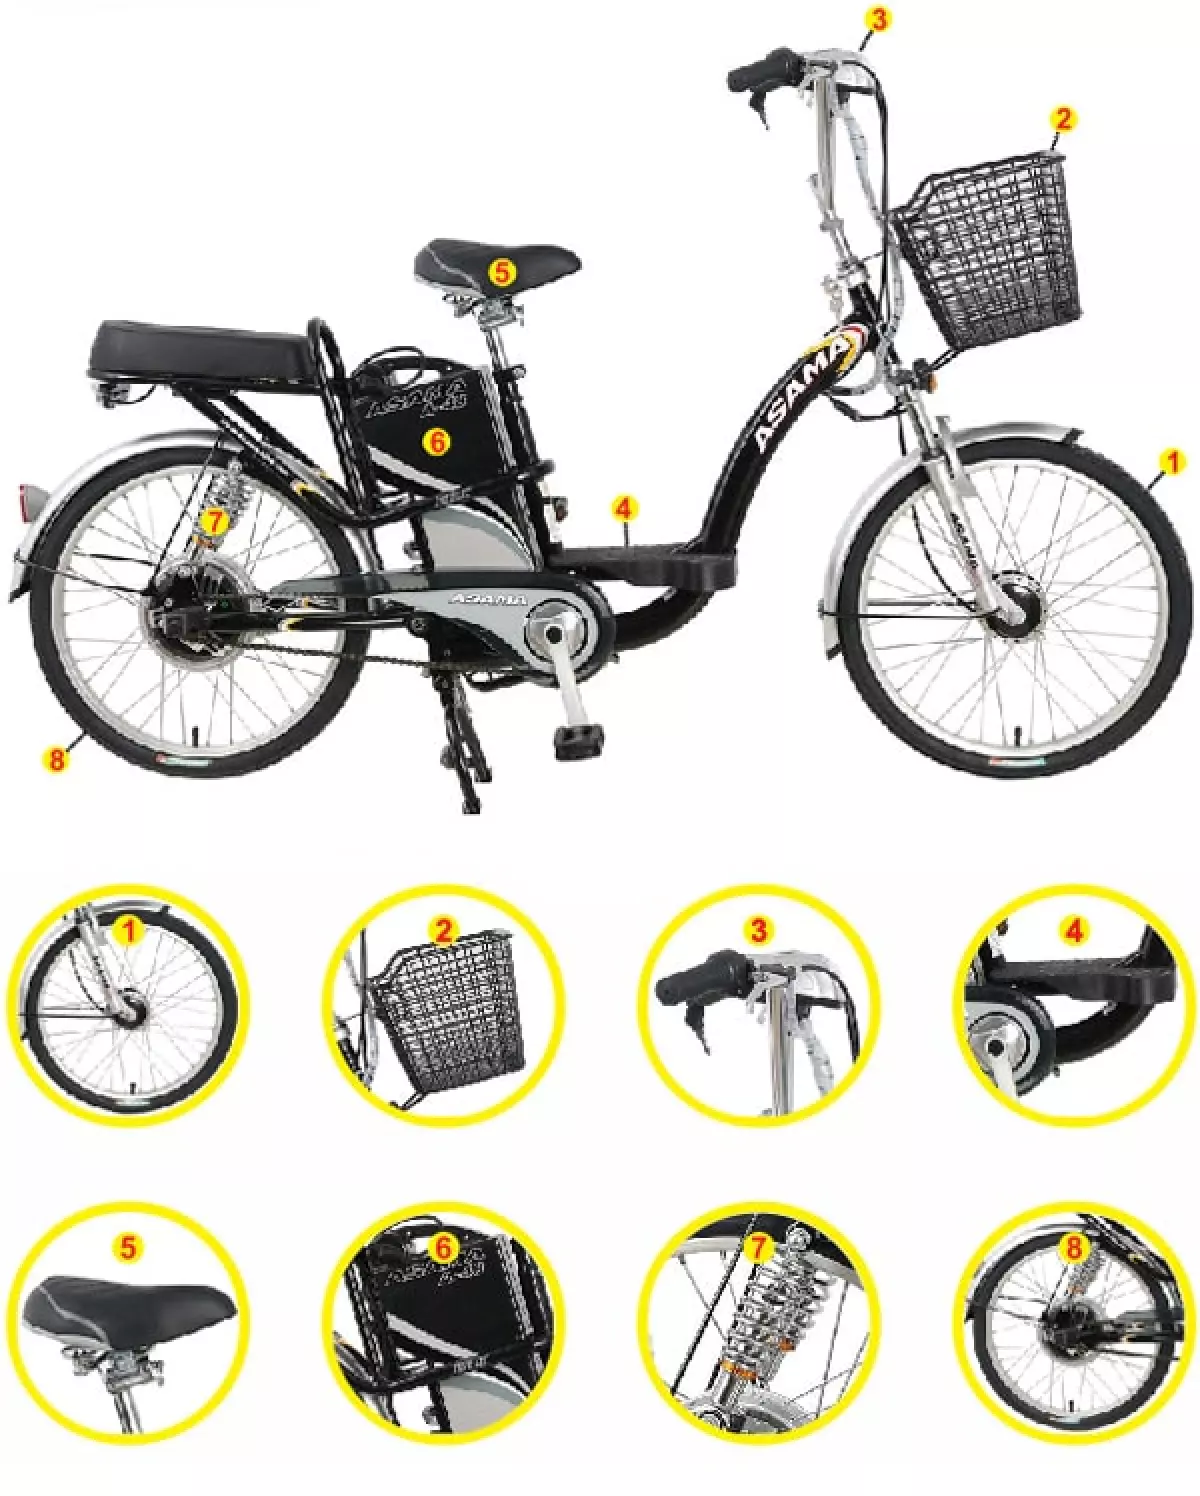 Thiết kế xe đạp điện Asama chính hãng